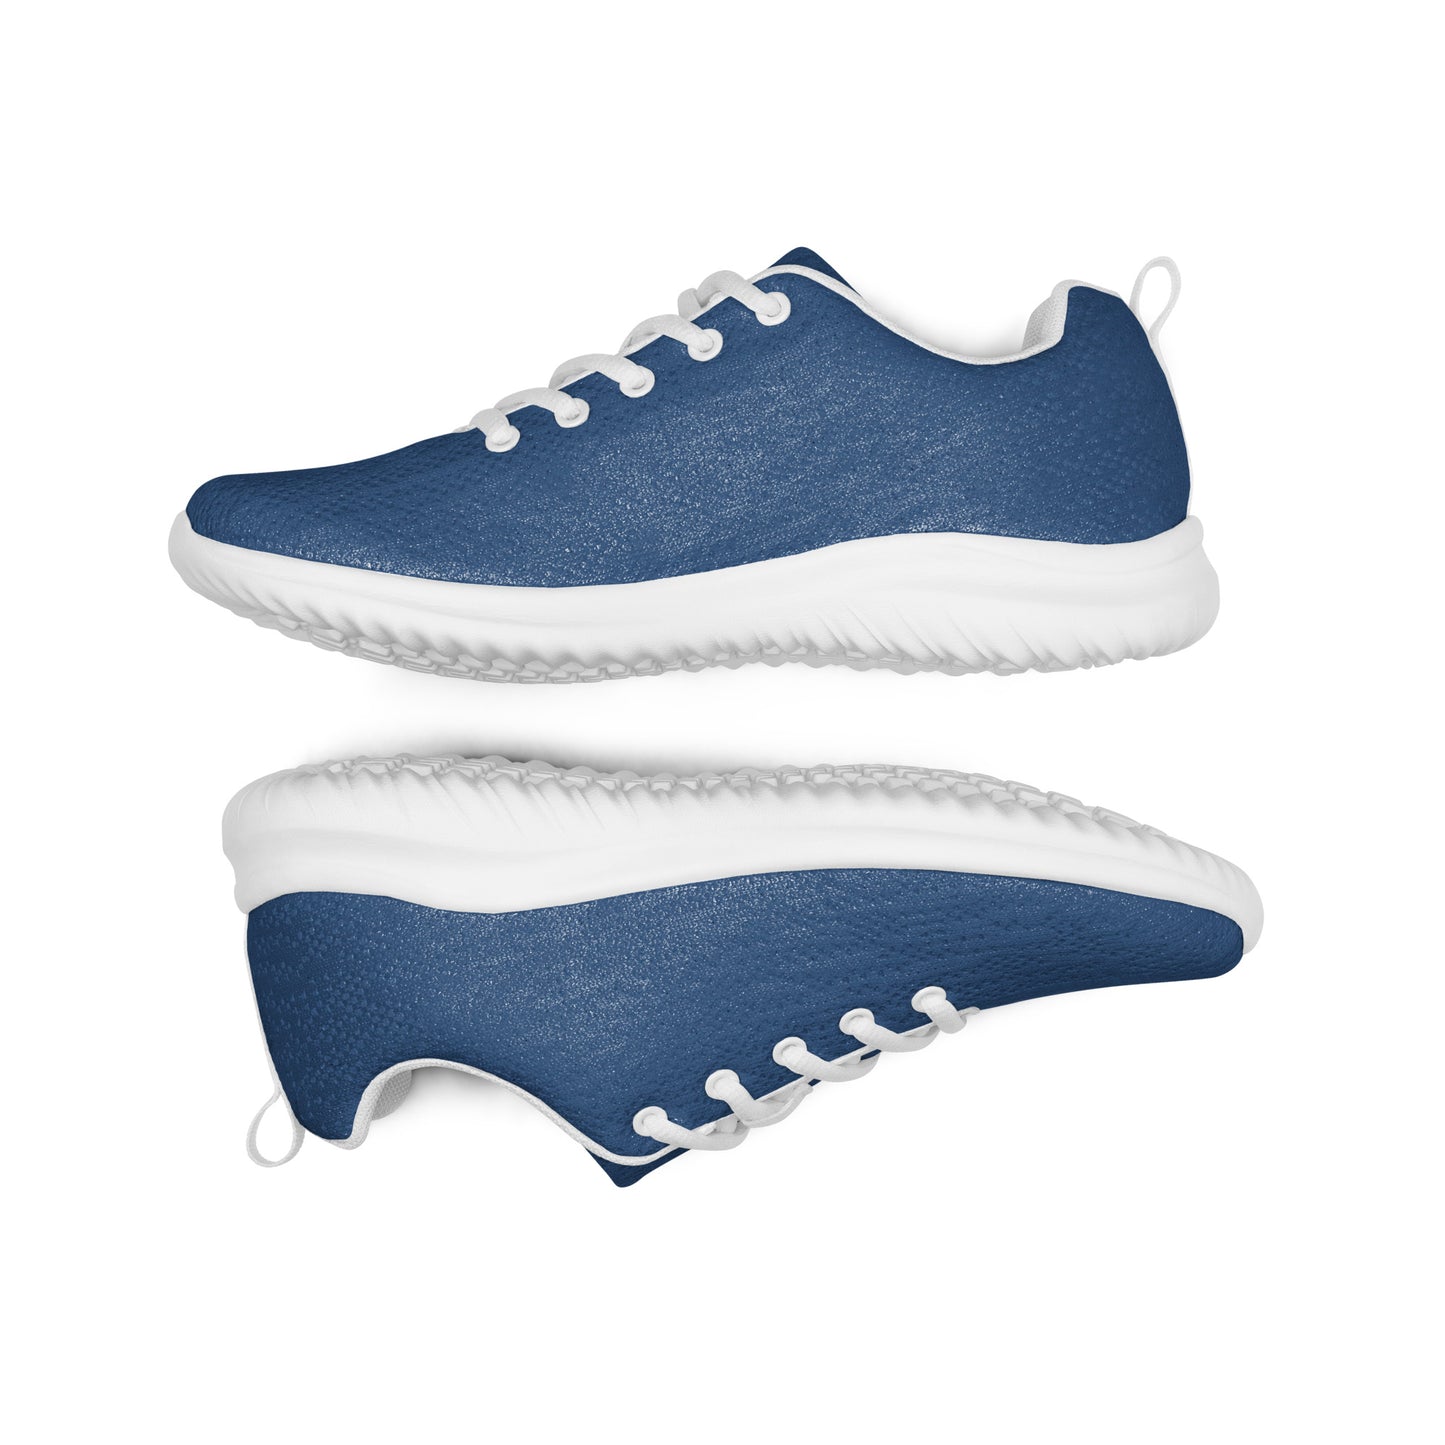 FYD Women’s Athletic Sneakers in royal blue